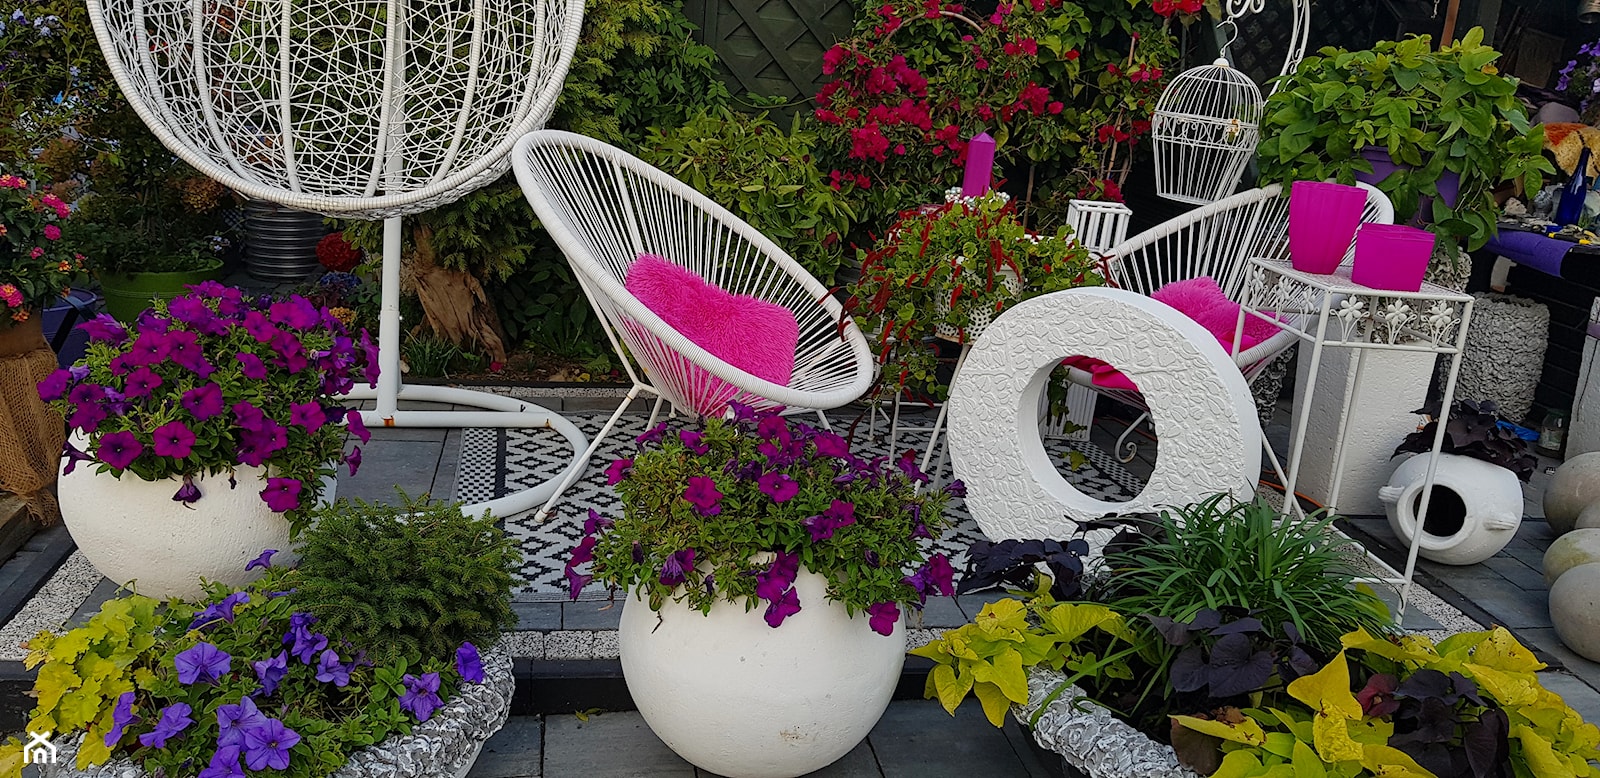 Kule ogrodowe ozdobne betonowe - Ogród, styl nowoczesny - zdjęcie od Ewa Tyrna - Homebook